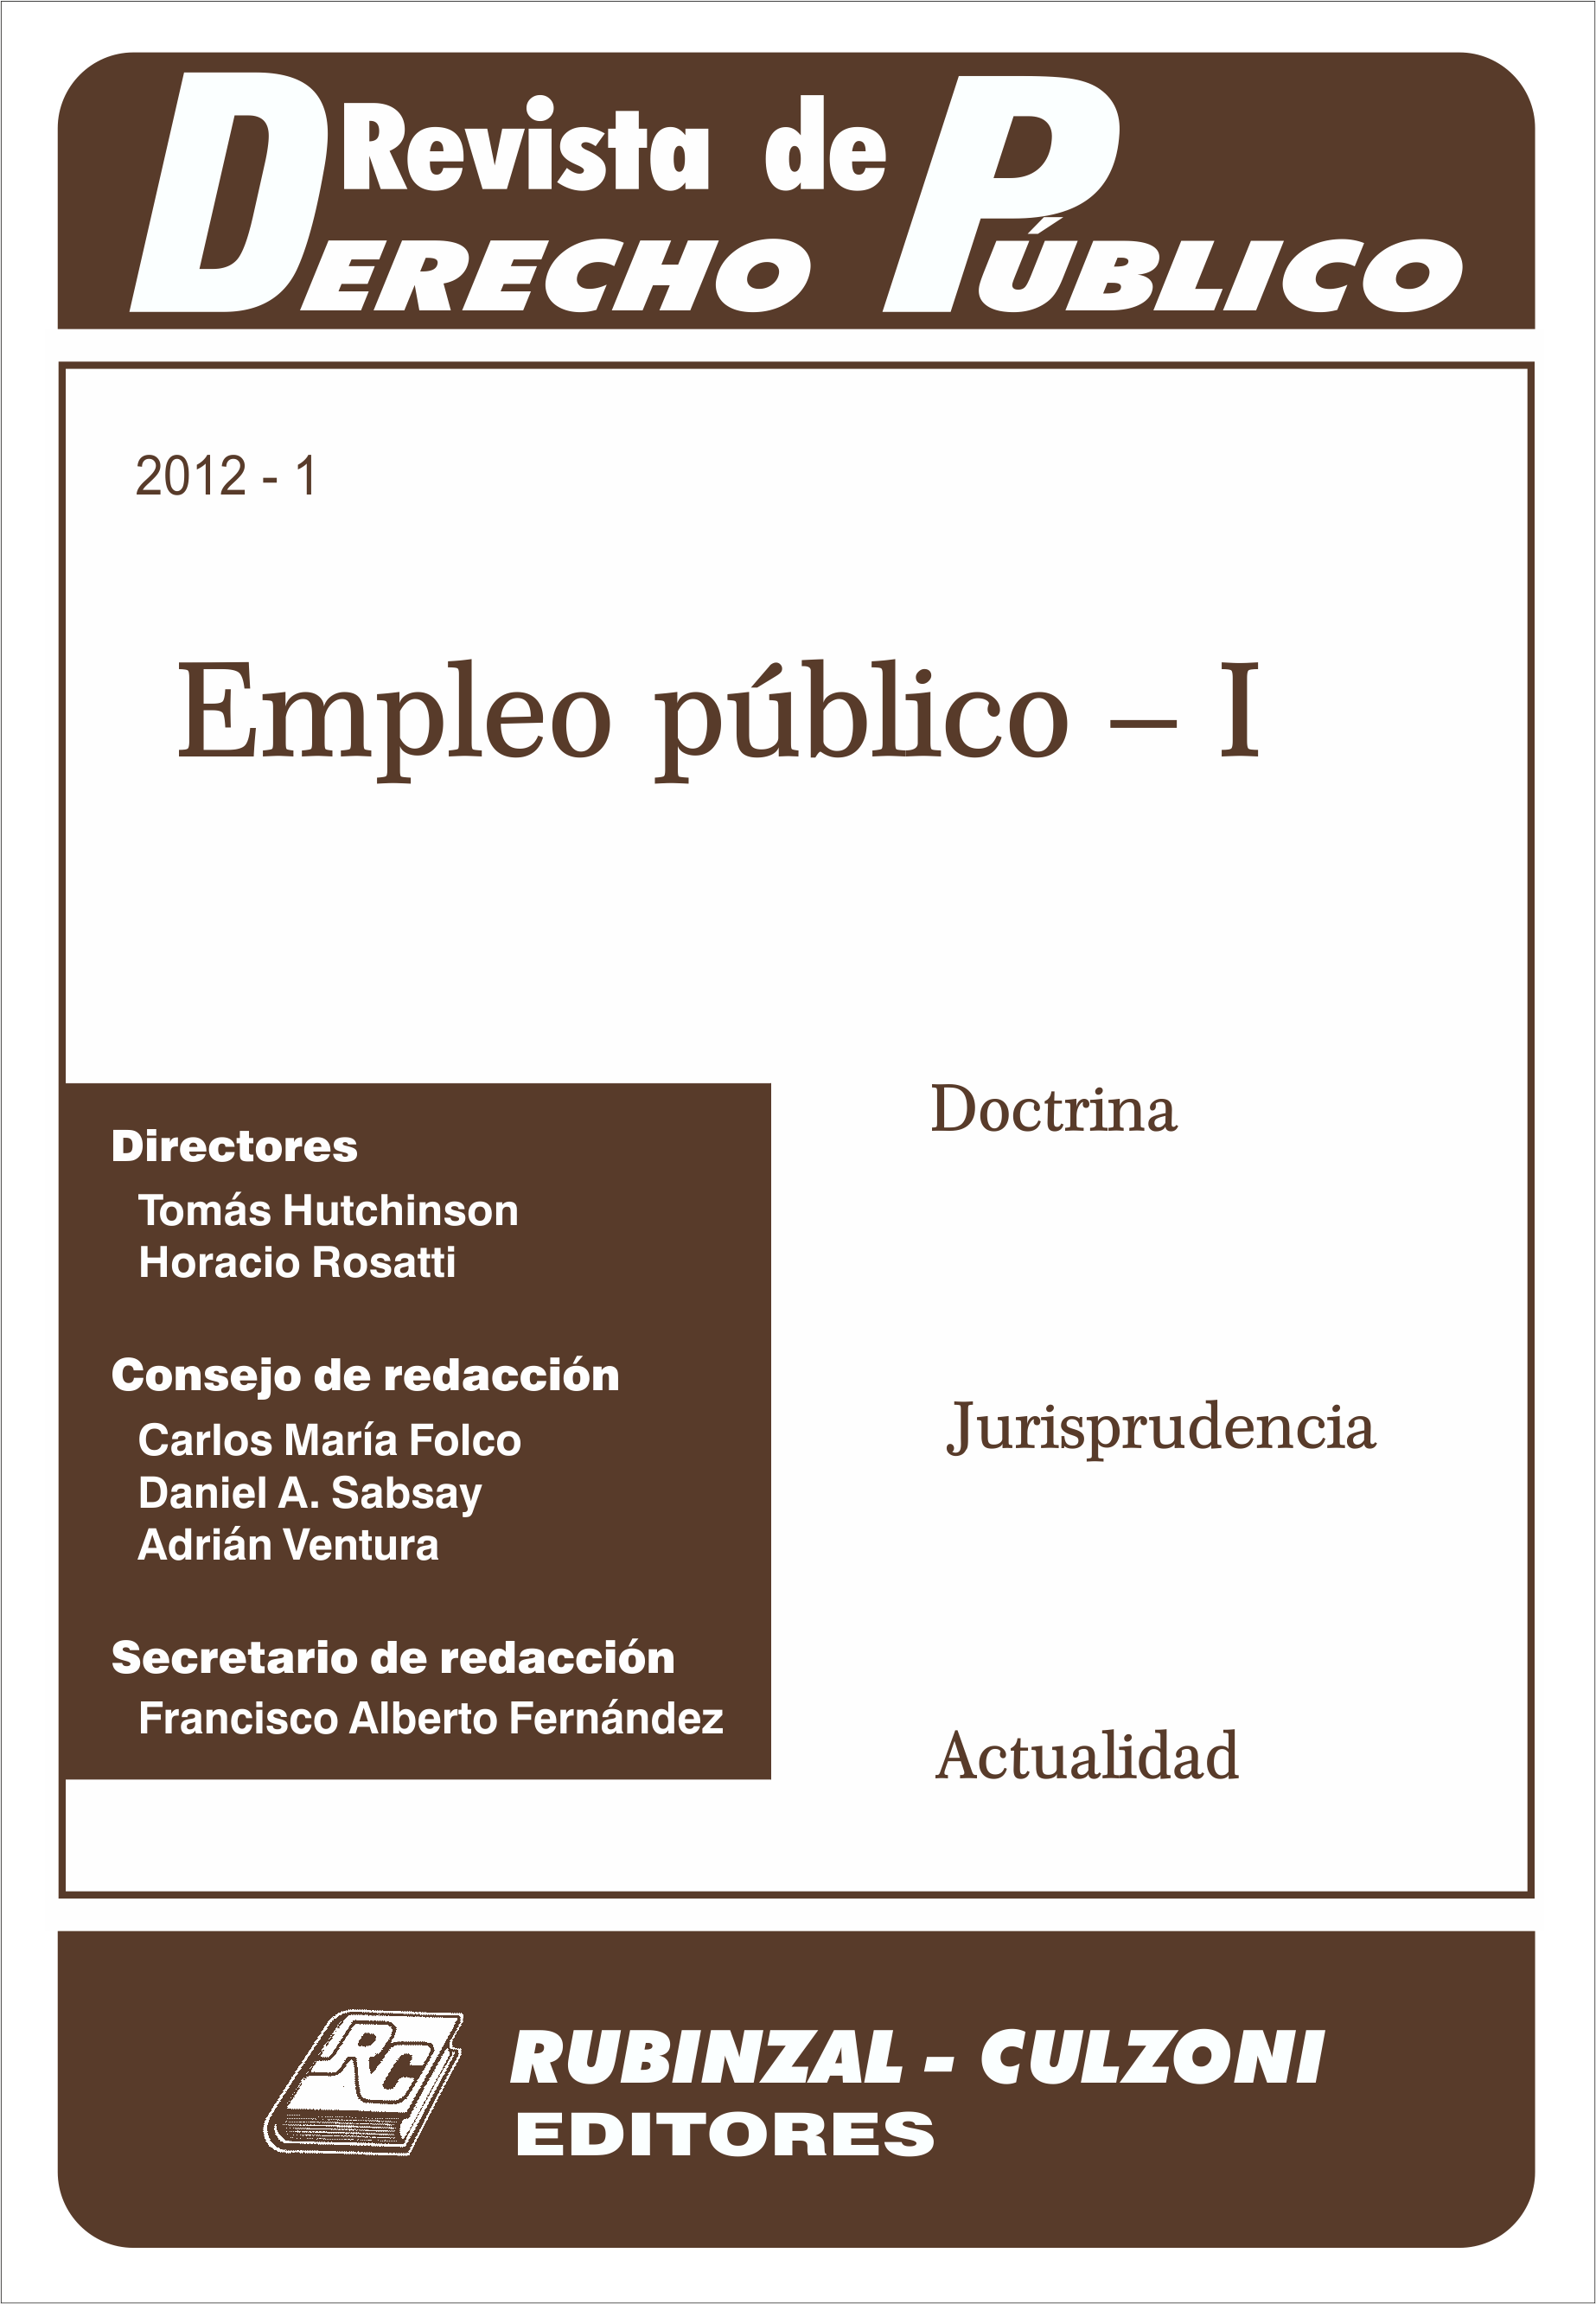 Revista de Derecho Público - Empleo público - I.